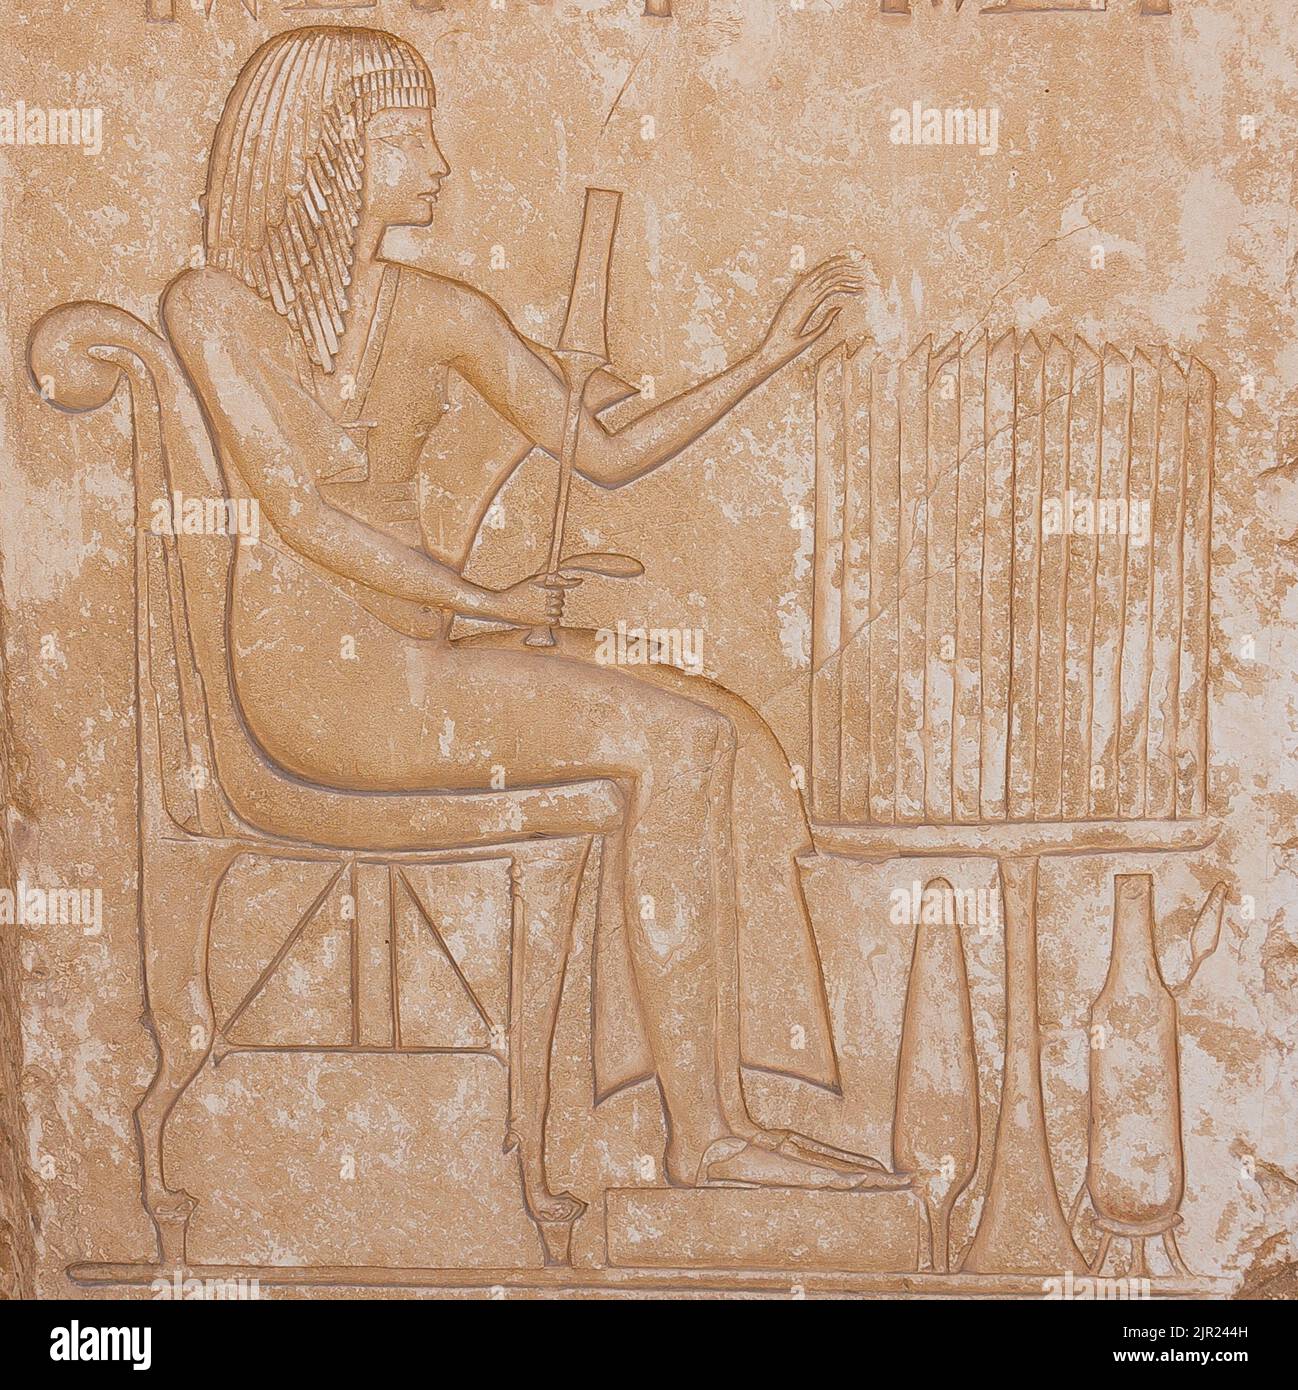 Egitto, Saqqara, tomba di Horemheb, stanza della statua, rappresentazione di Horemheb, con ureo. Foto Stock